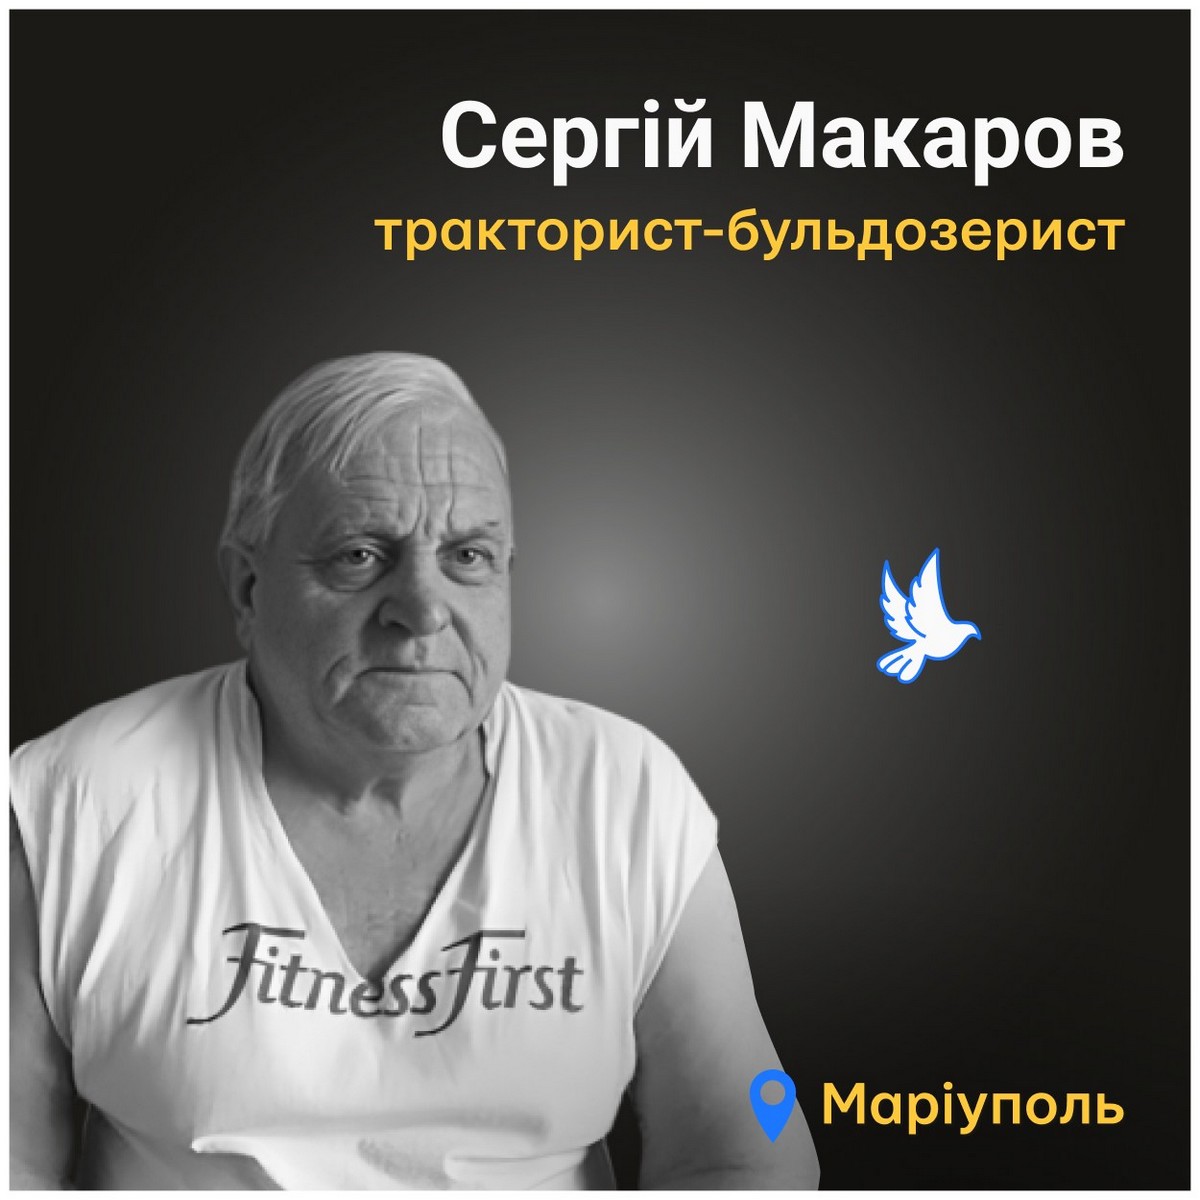 Меморіал: вбиті росією. Сергій Макаров, 63 роки, Маріуполь, березень